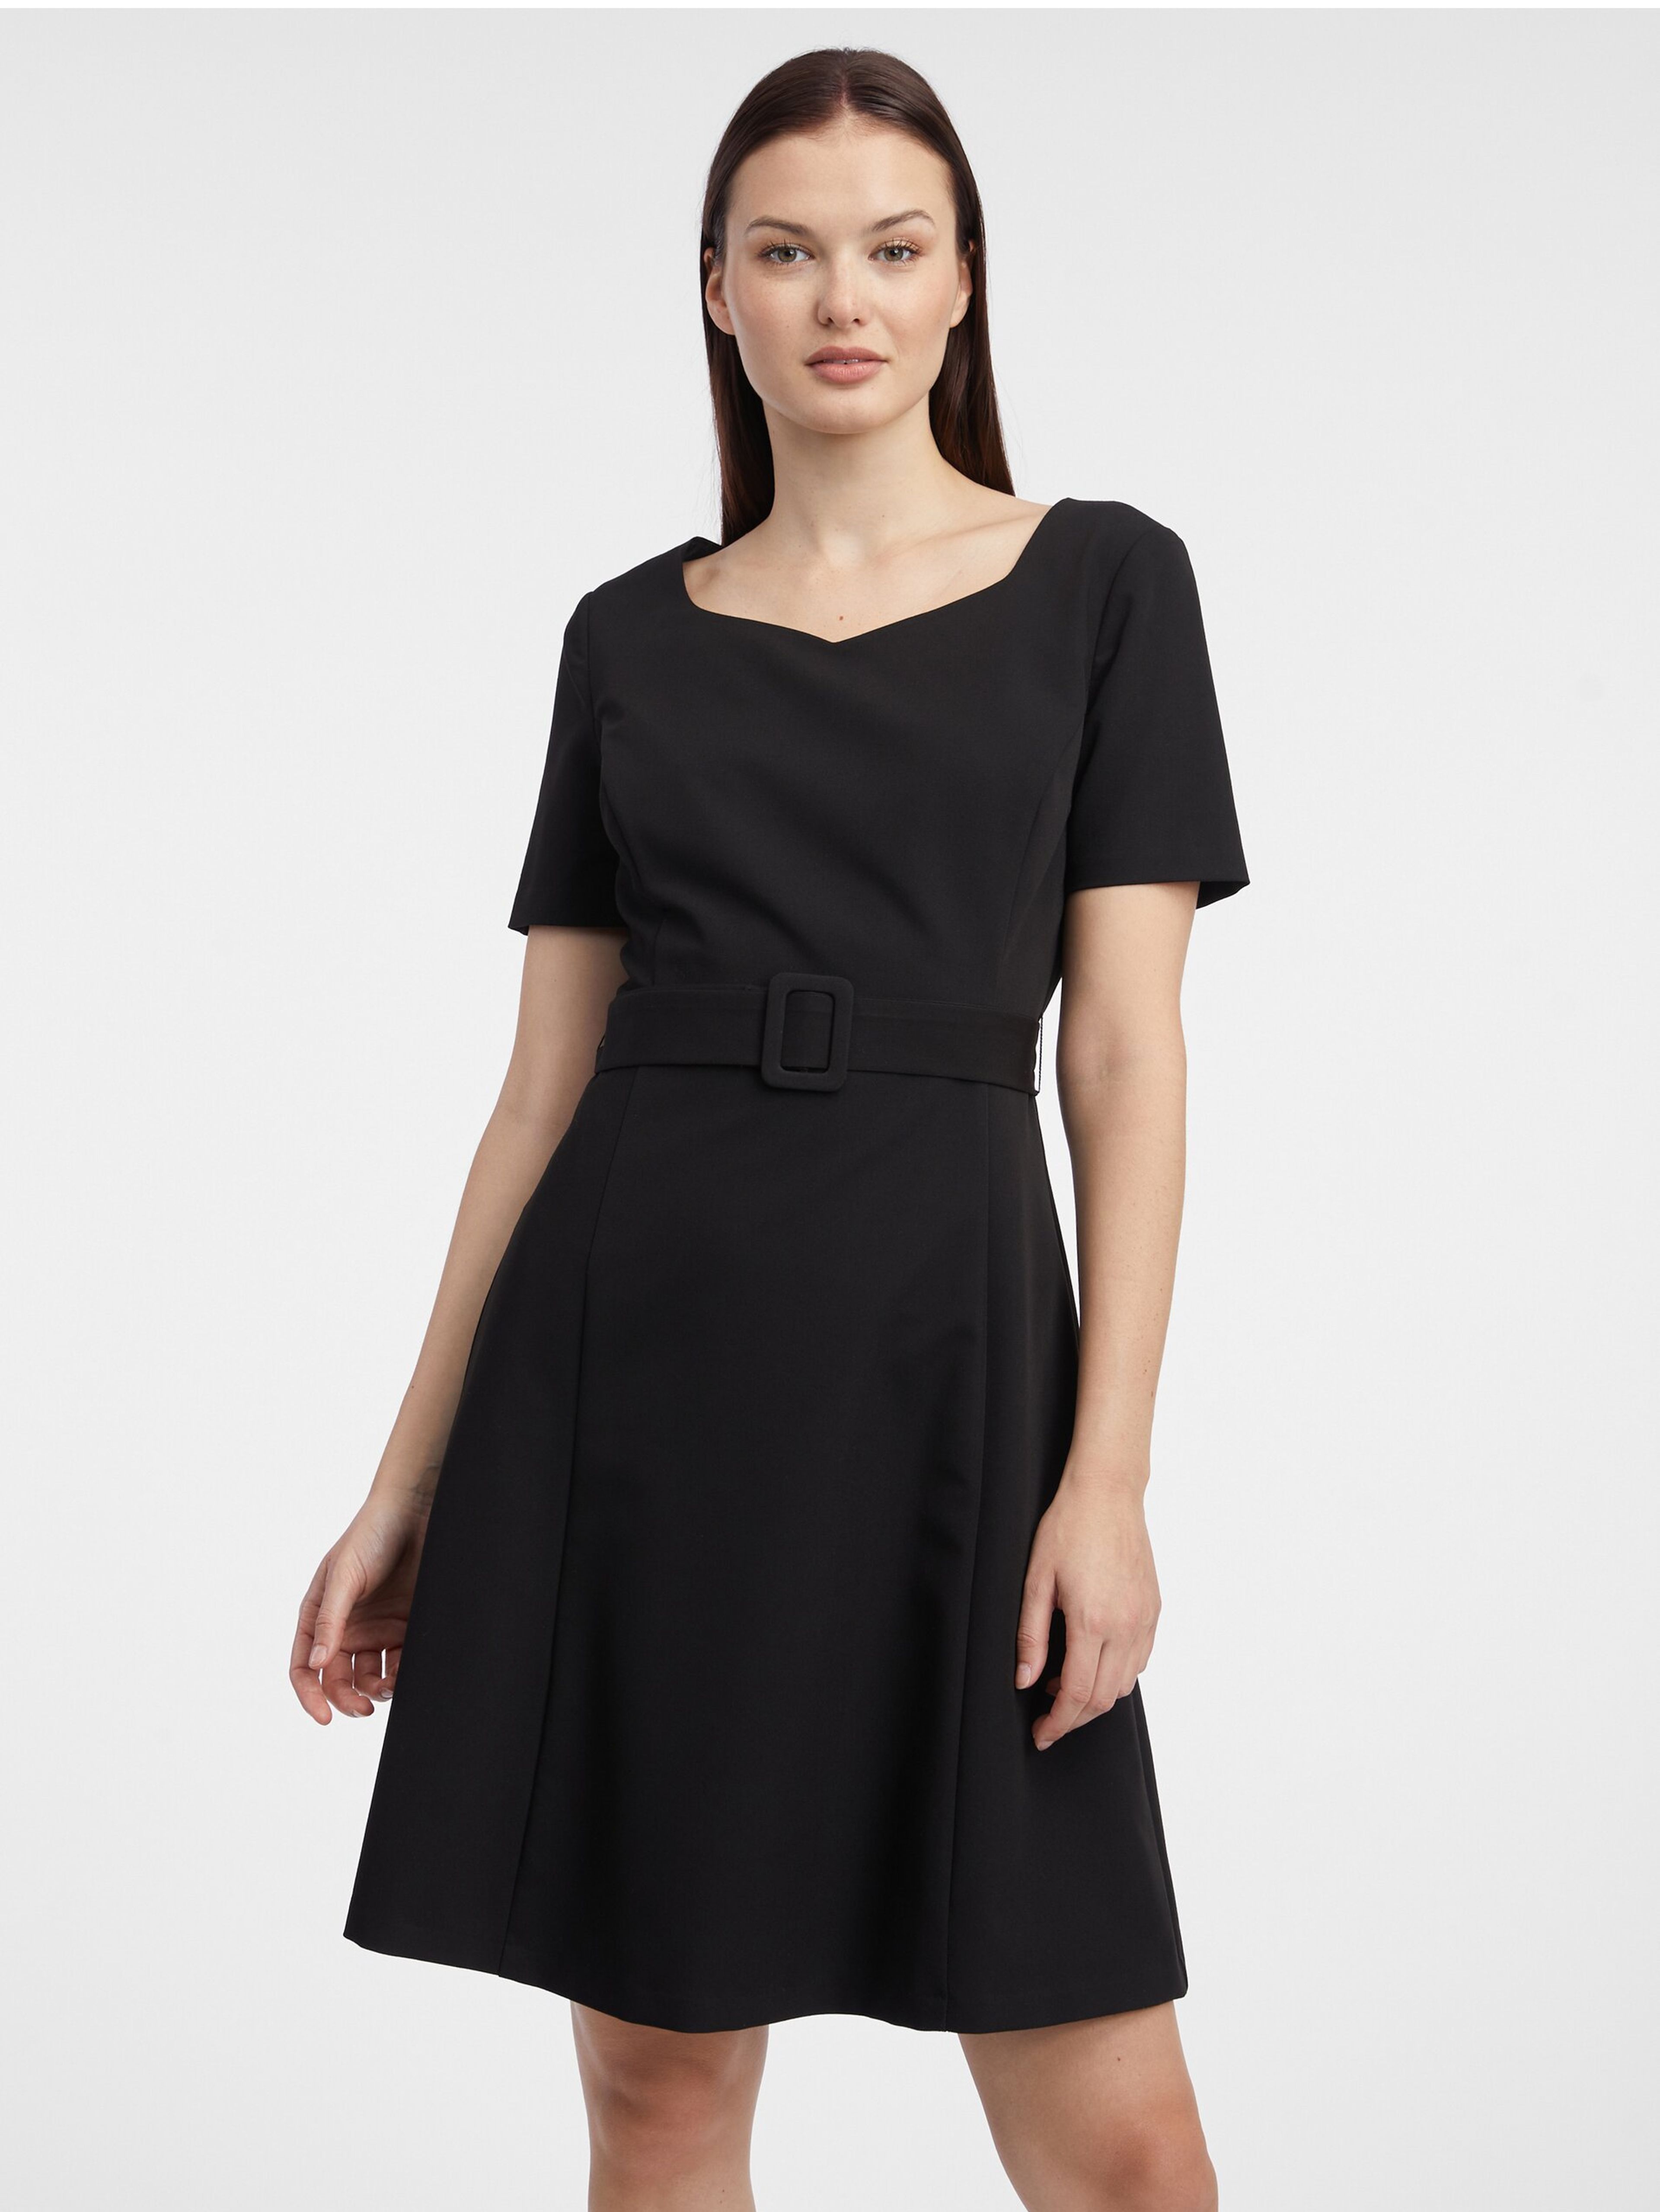 Čierne dámske šaty ORSAY